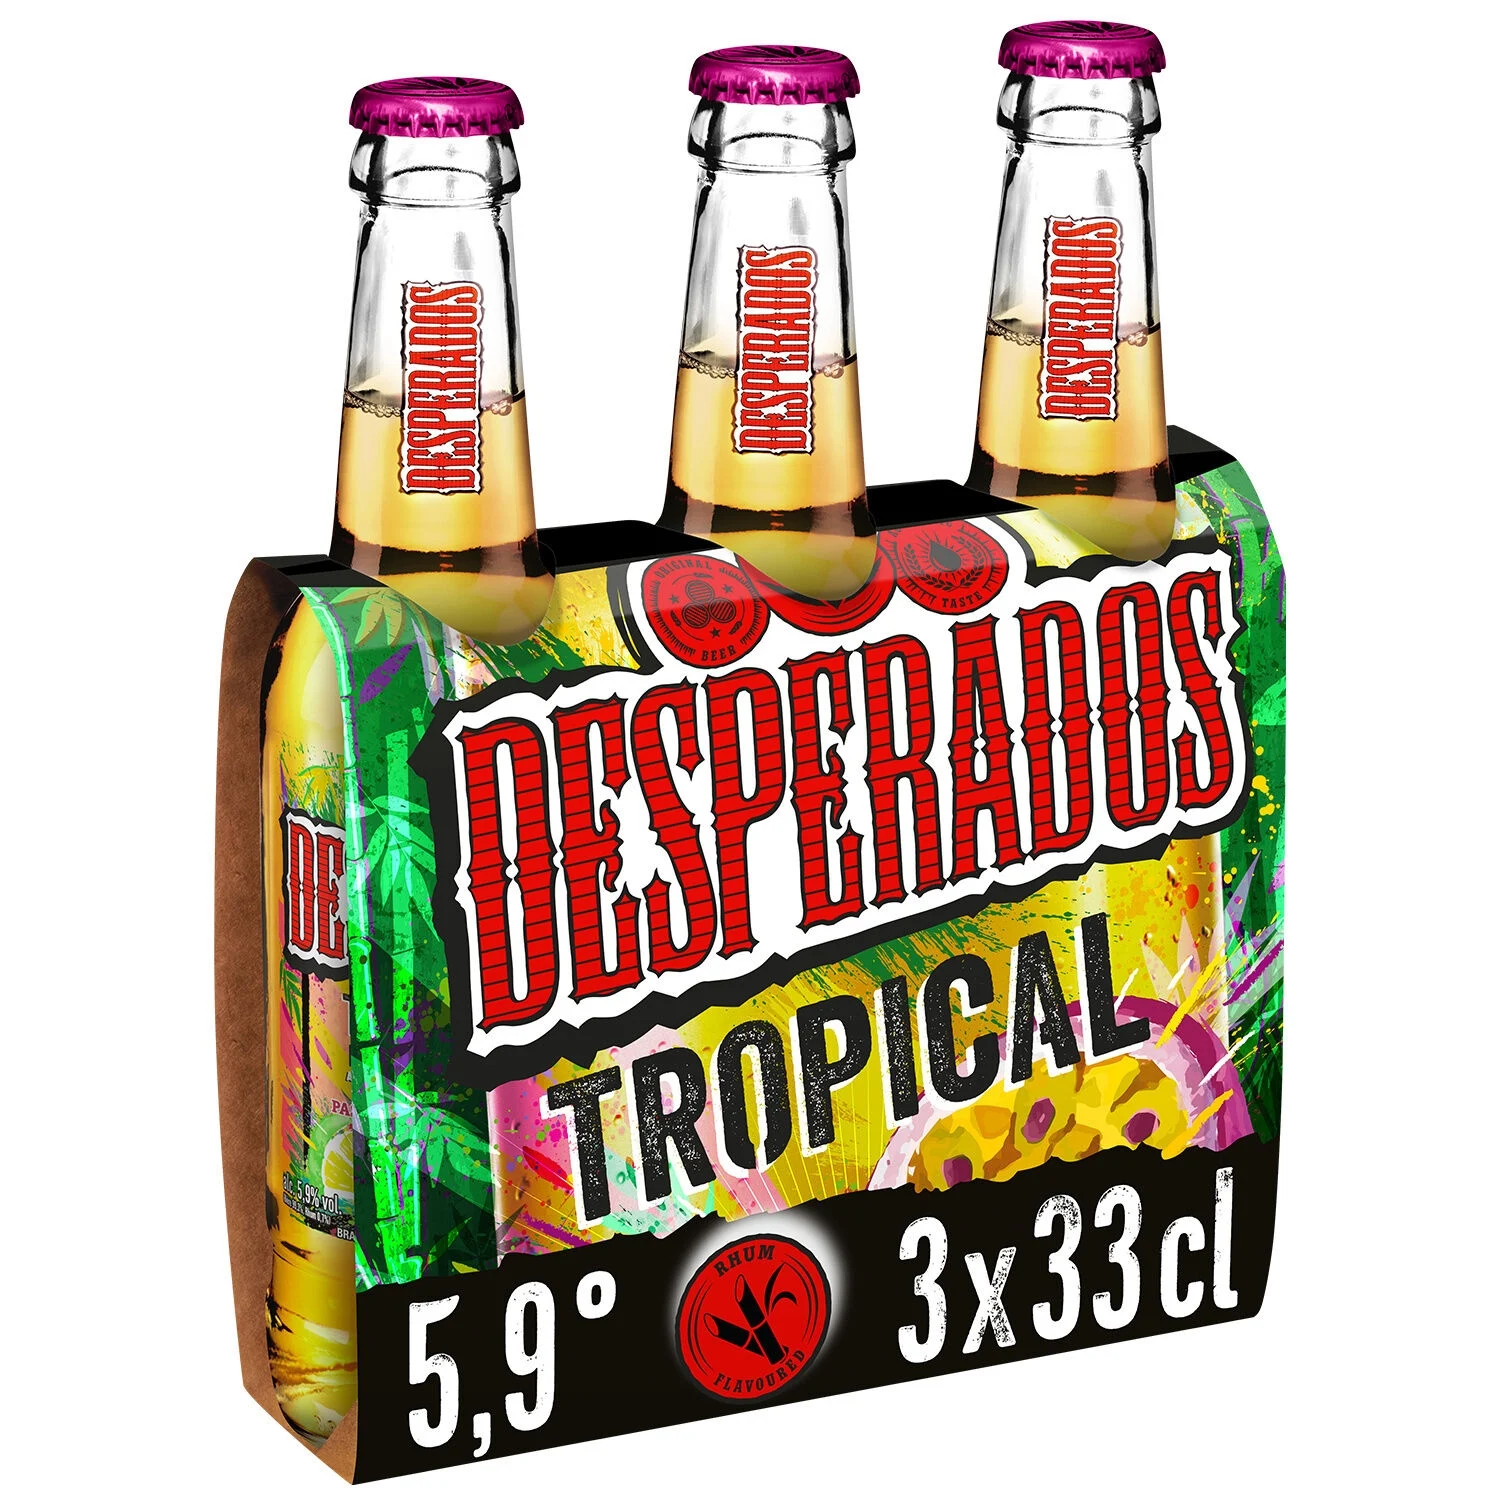 3x33cl Desperados 5 9 Tropical